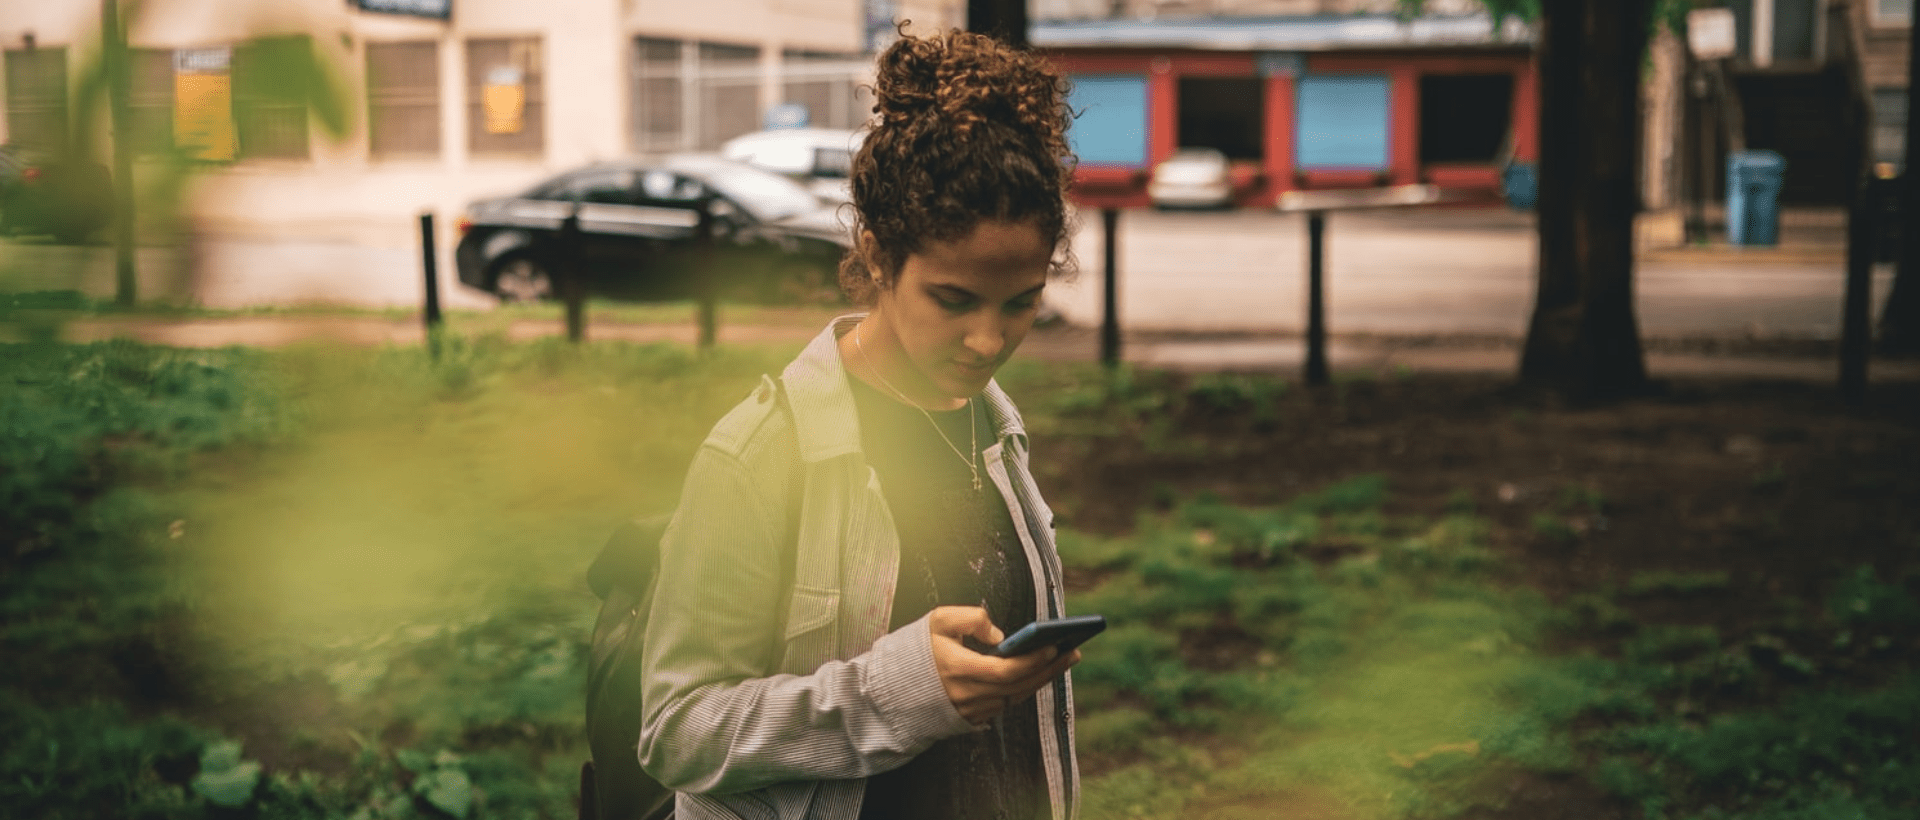 Ein junges Mädchen, der Generation Z, das auf ihr Handy schaut und die Nutzung von Plattformen darstellen soll.